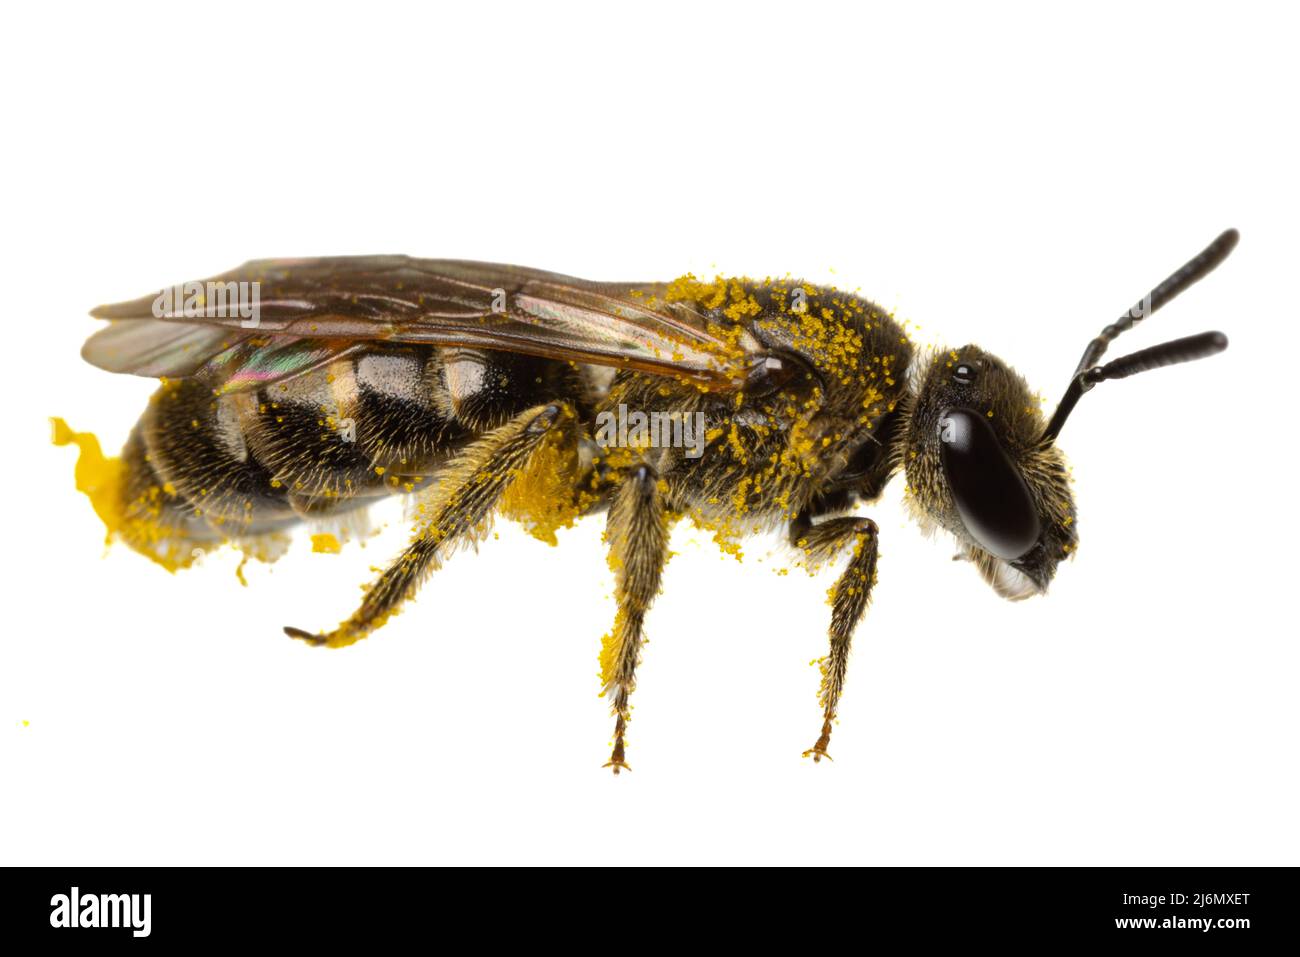 Insectes d'europe - abeilles: Vue latérale macro de l'abeille douce femelle ( Lasioglossum german Schmalbiene ) isolée sur fond blanc avec du pollen partout Banque D'Images